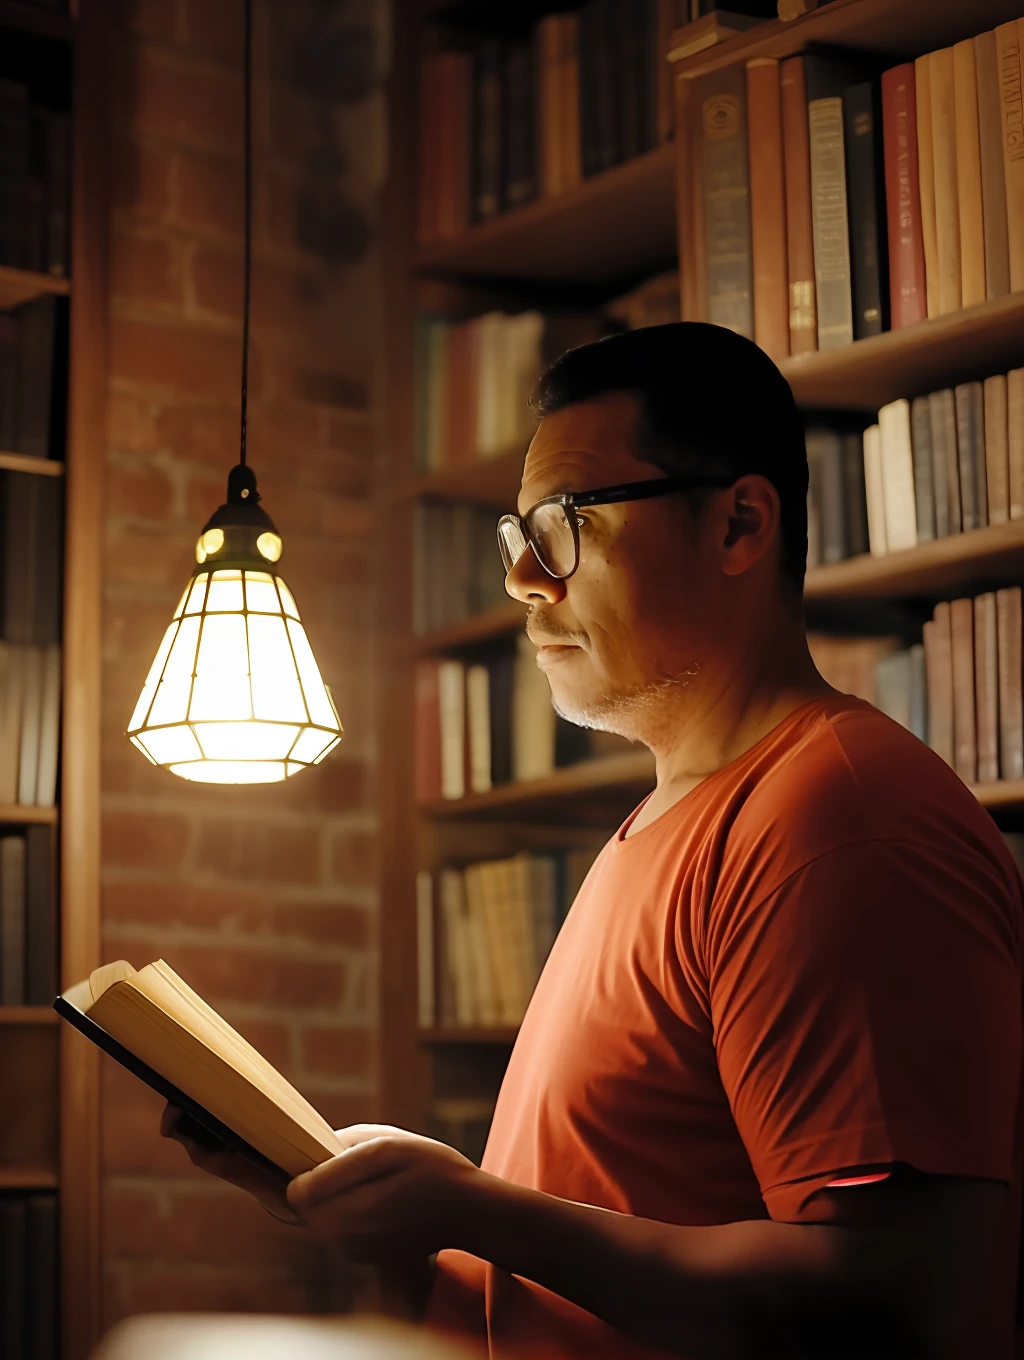 GuttonerdVision4, homem de óculos um livro antigo, luz crepuscular, Atmosfera calorosa, atmosfera culta